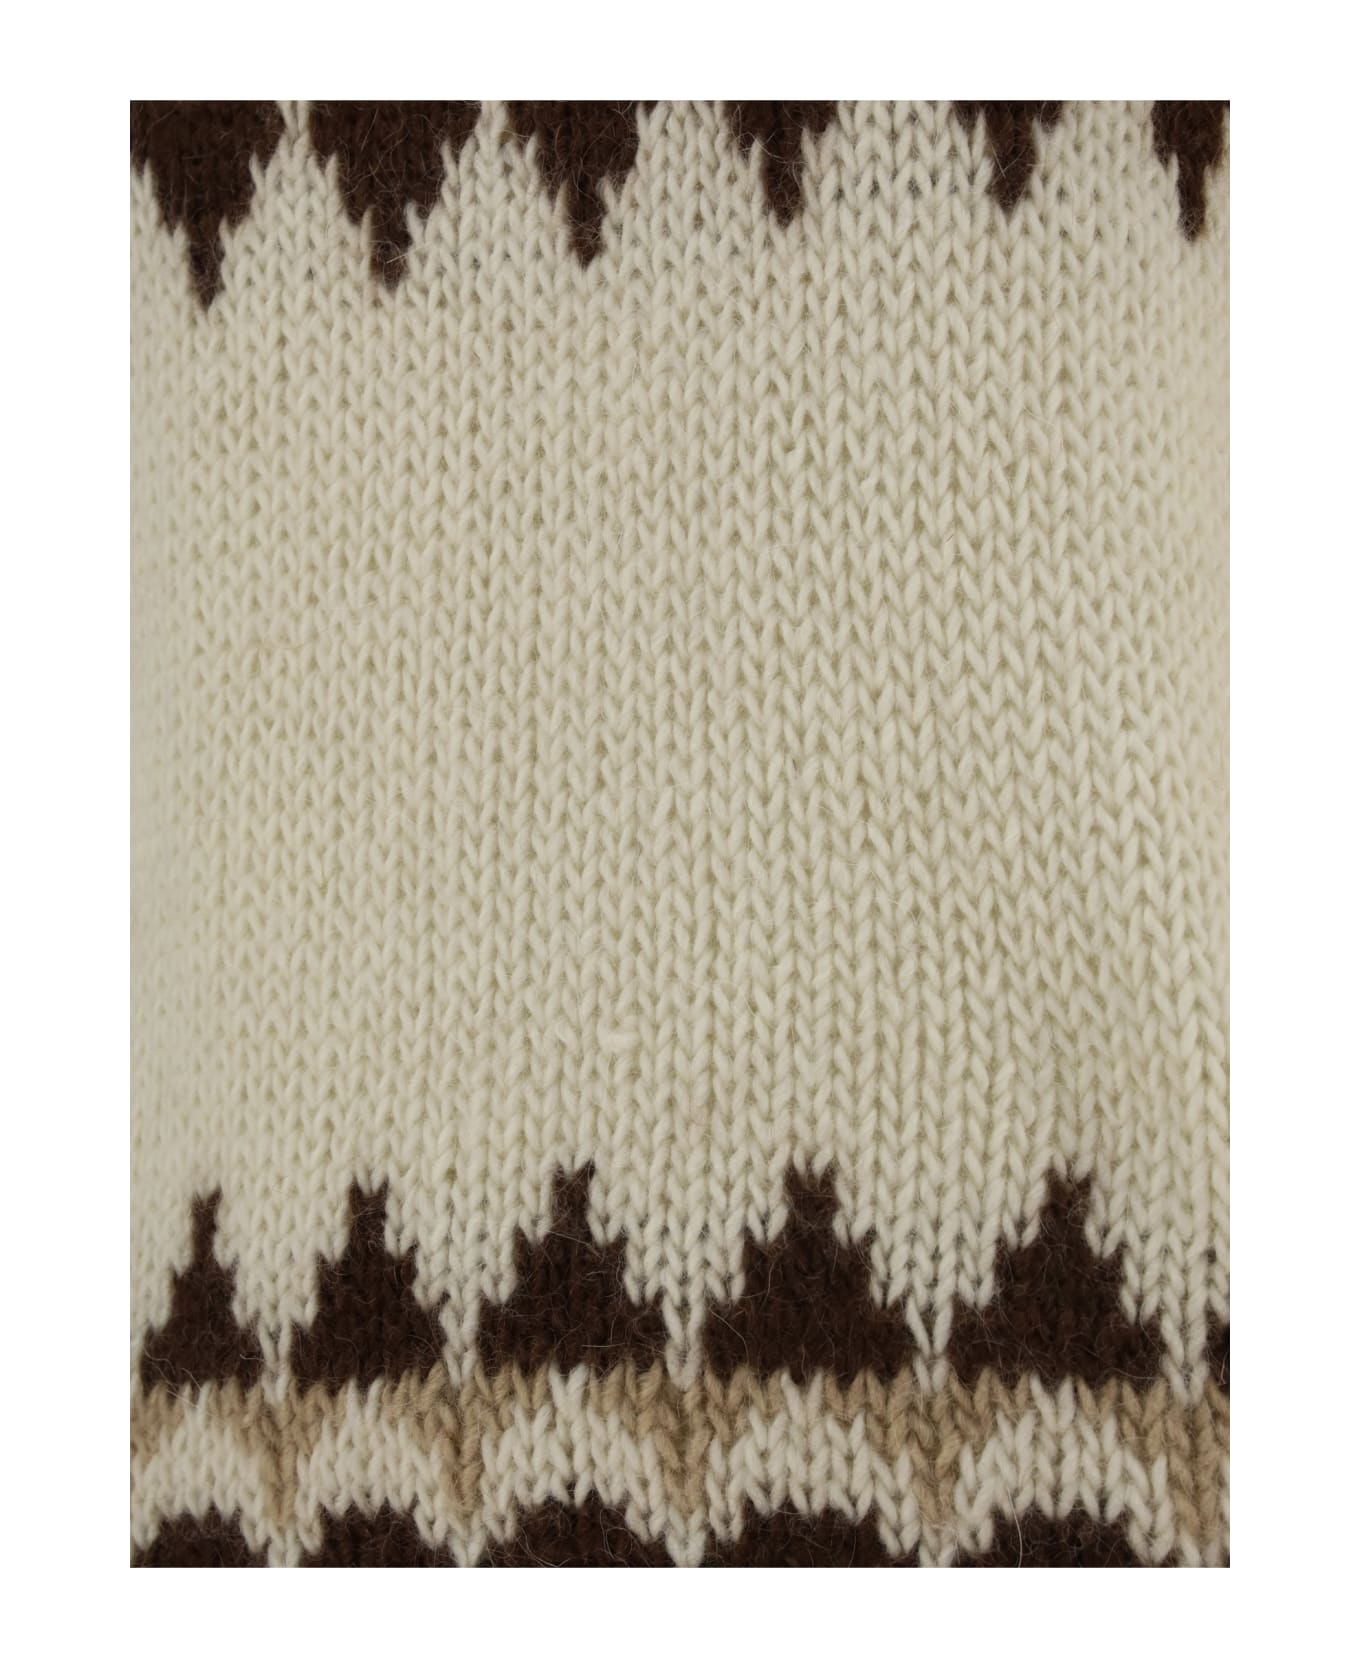 Saint Laurent Sweater - Naturel/marron/beige